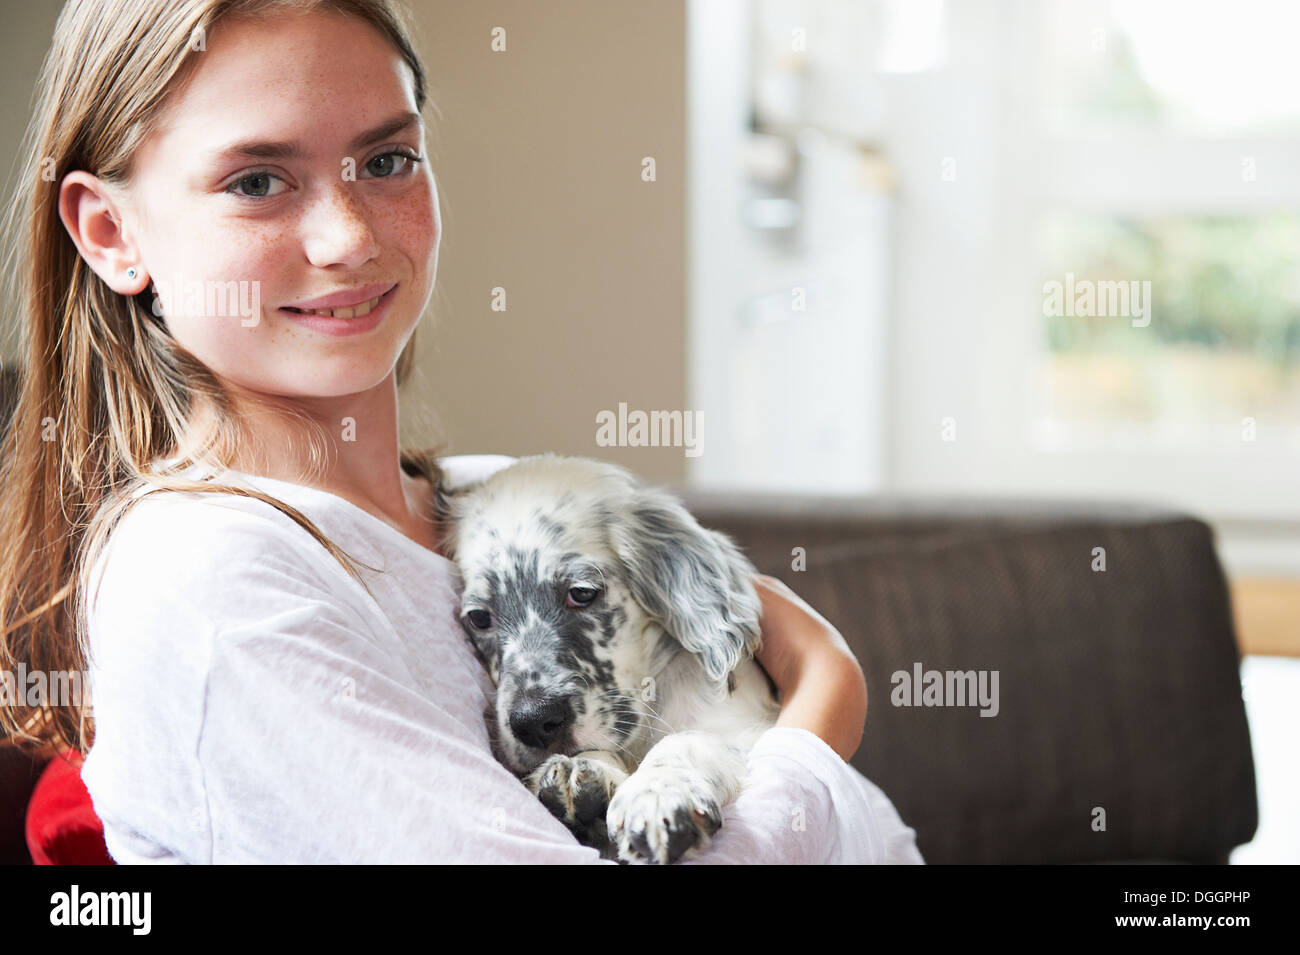 Teenage girl holding dog Stock Photo